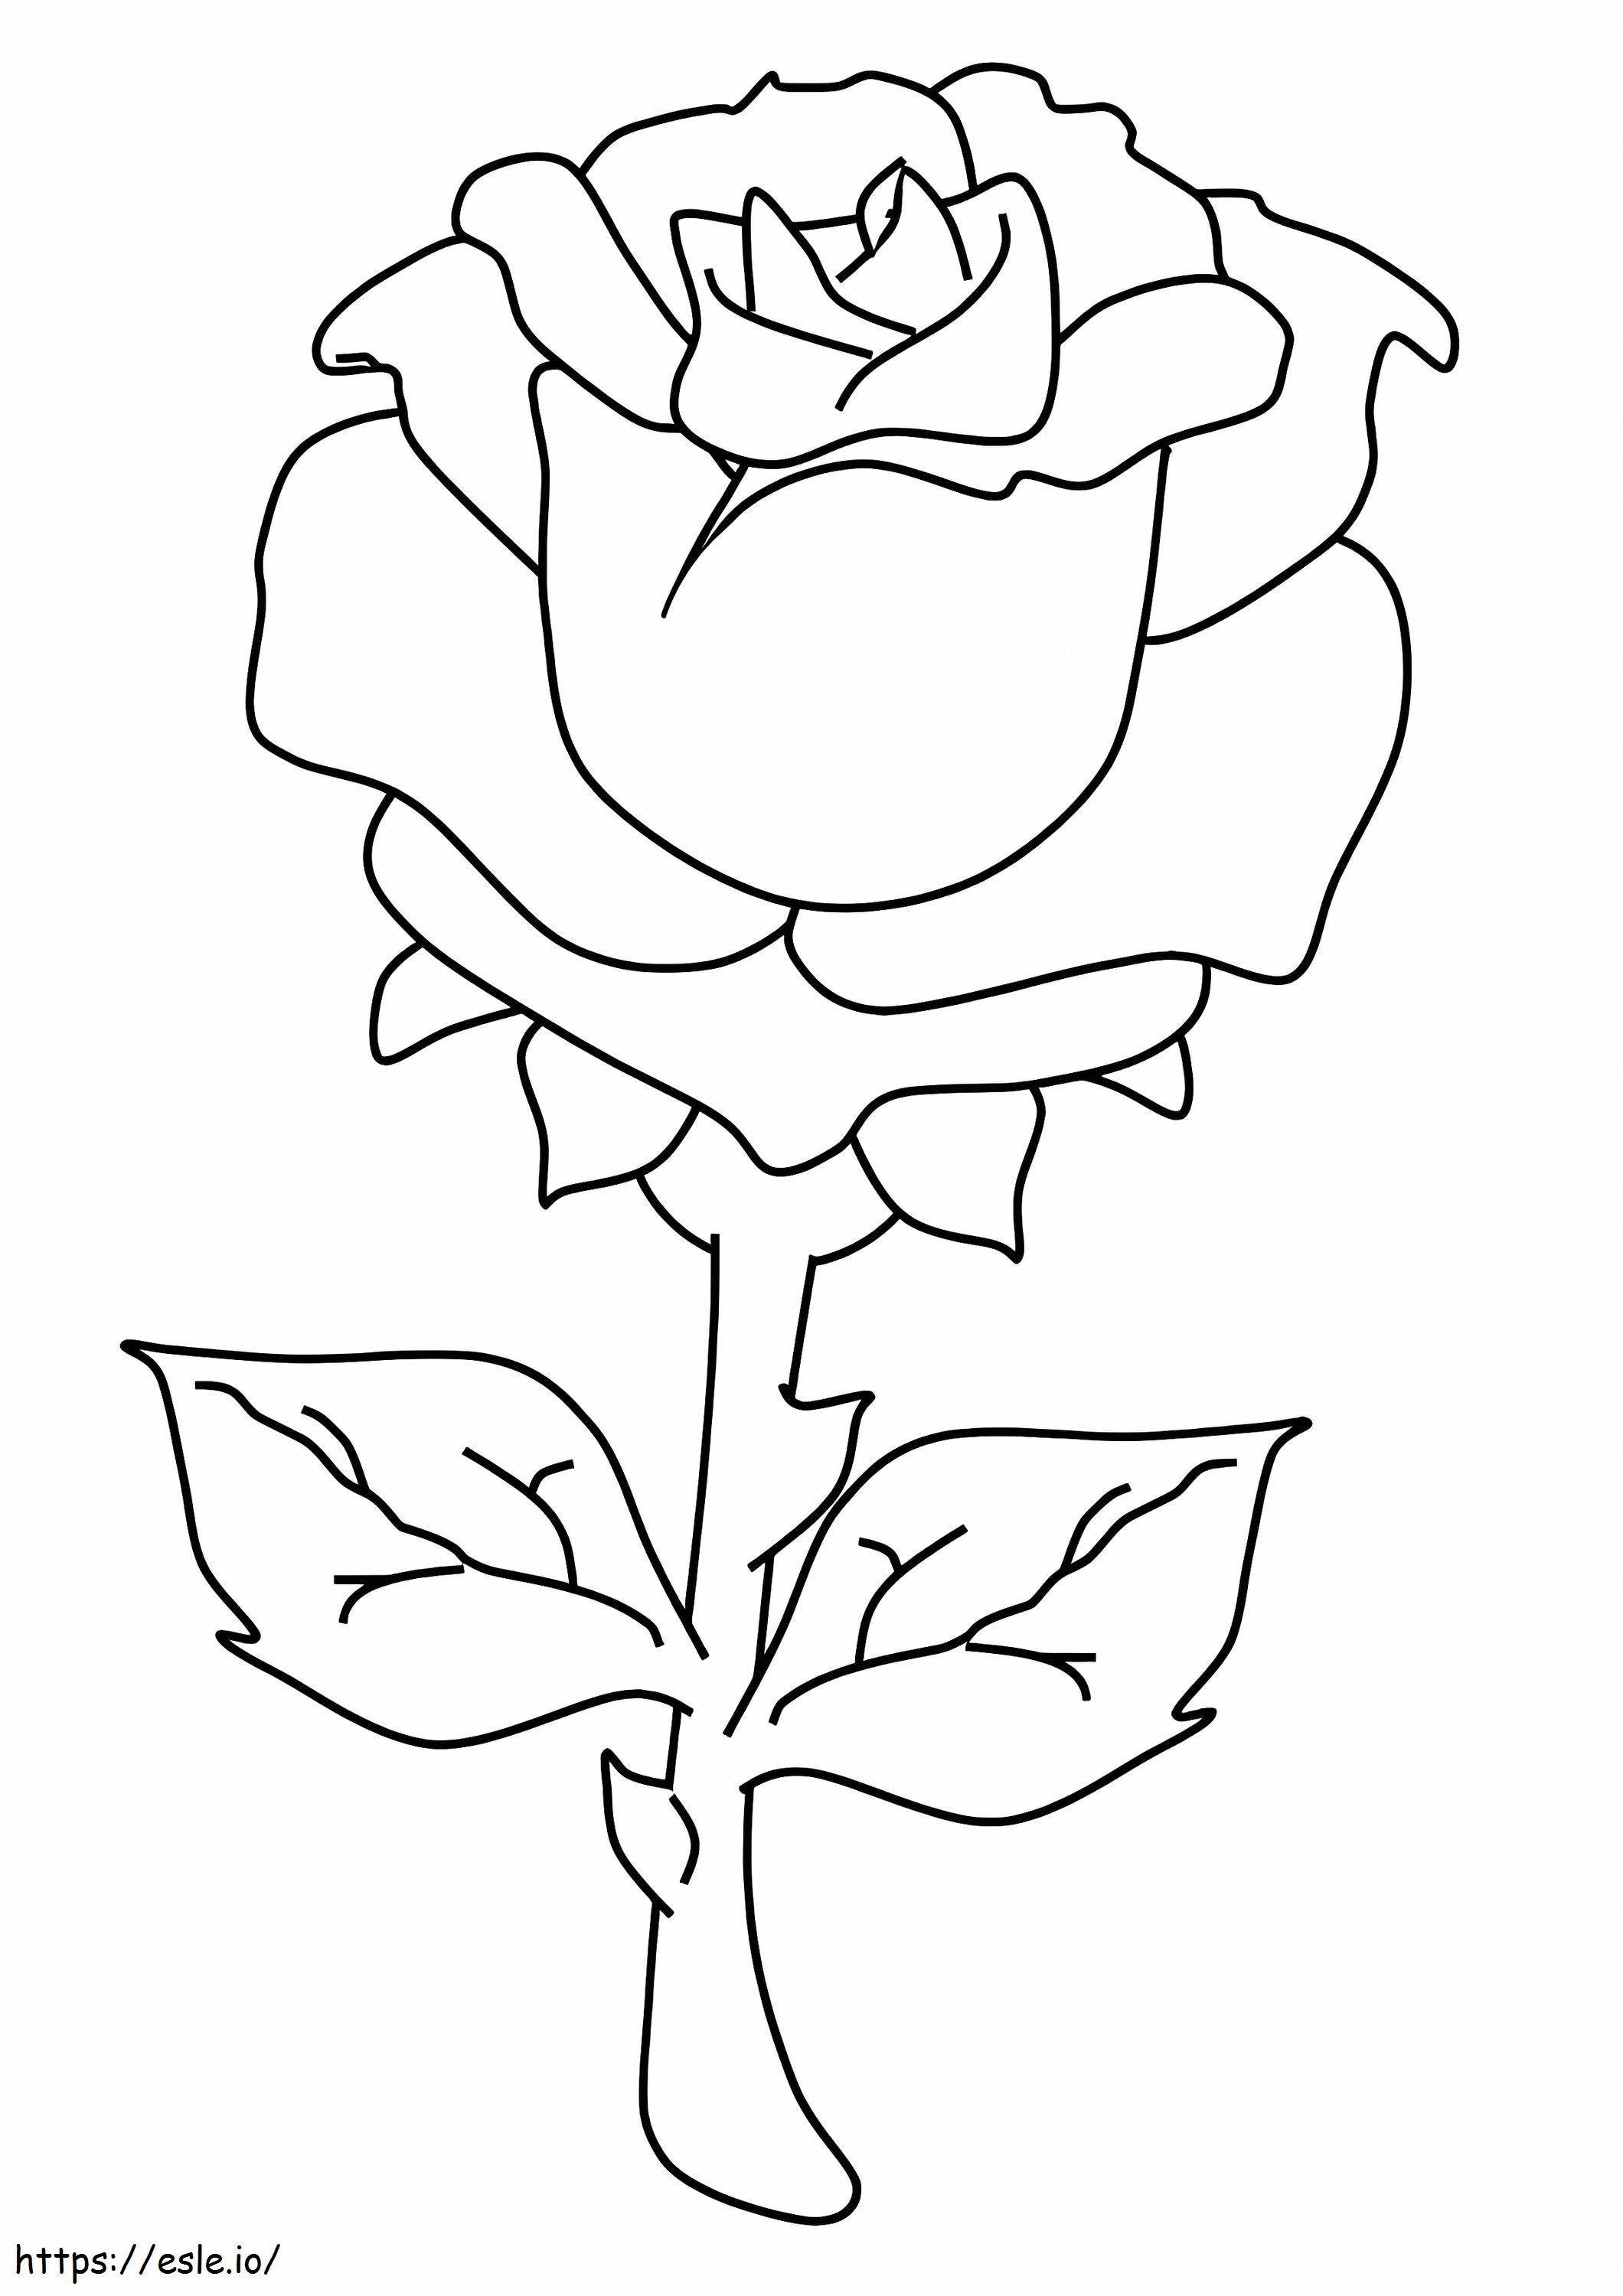  Prachtige roos A4 kleurplaat kleurplaat